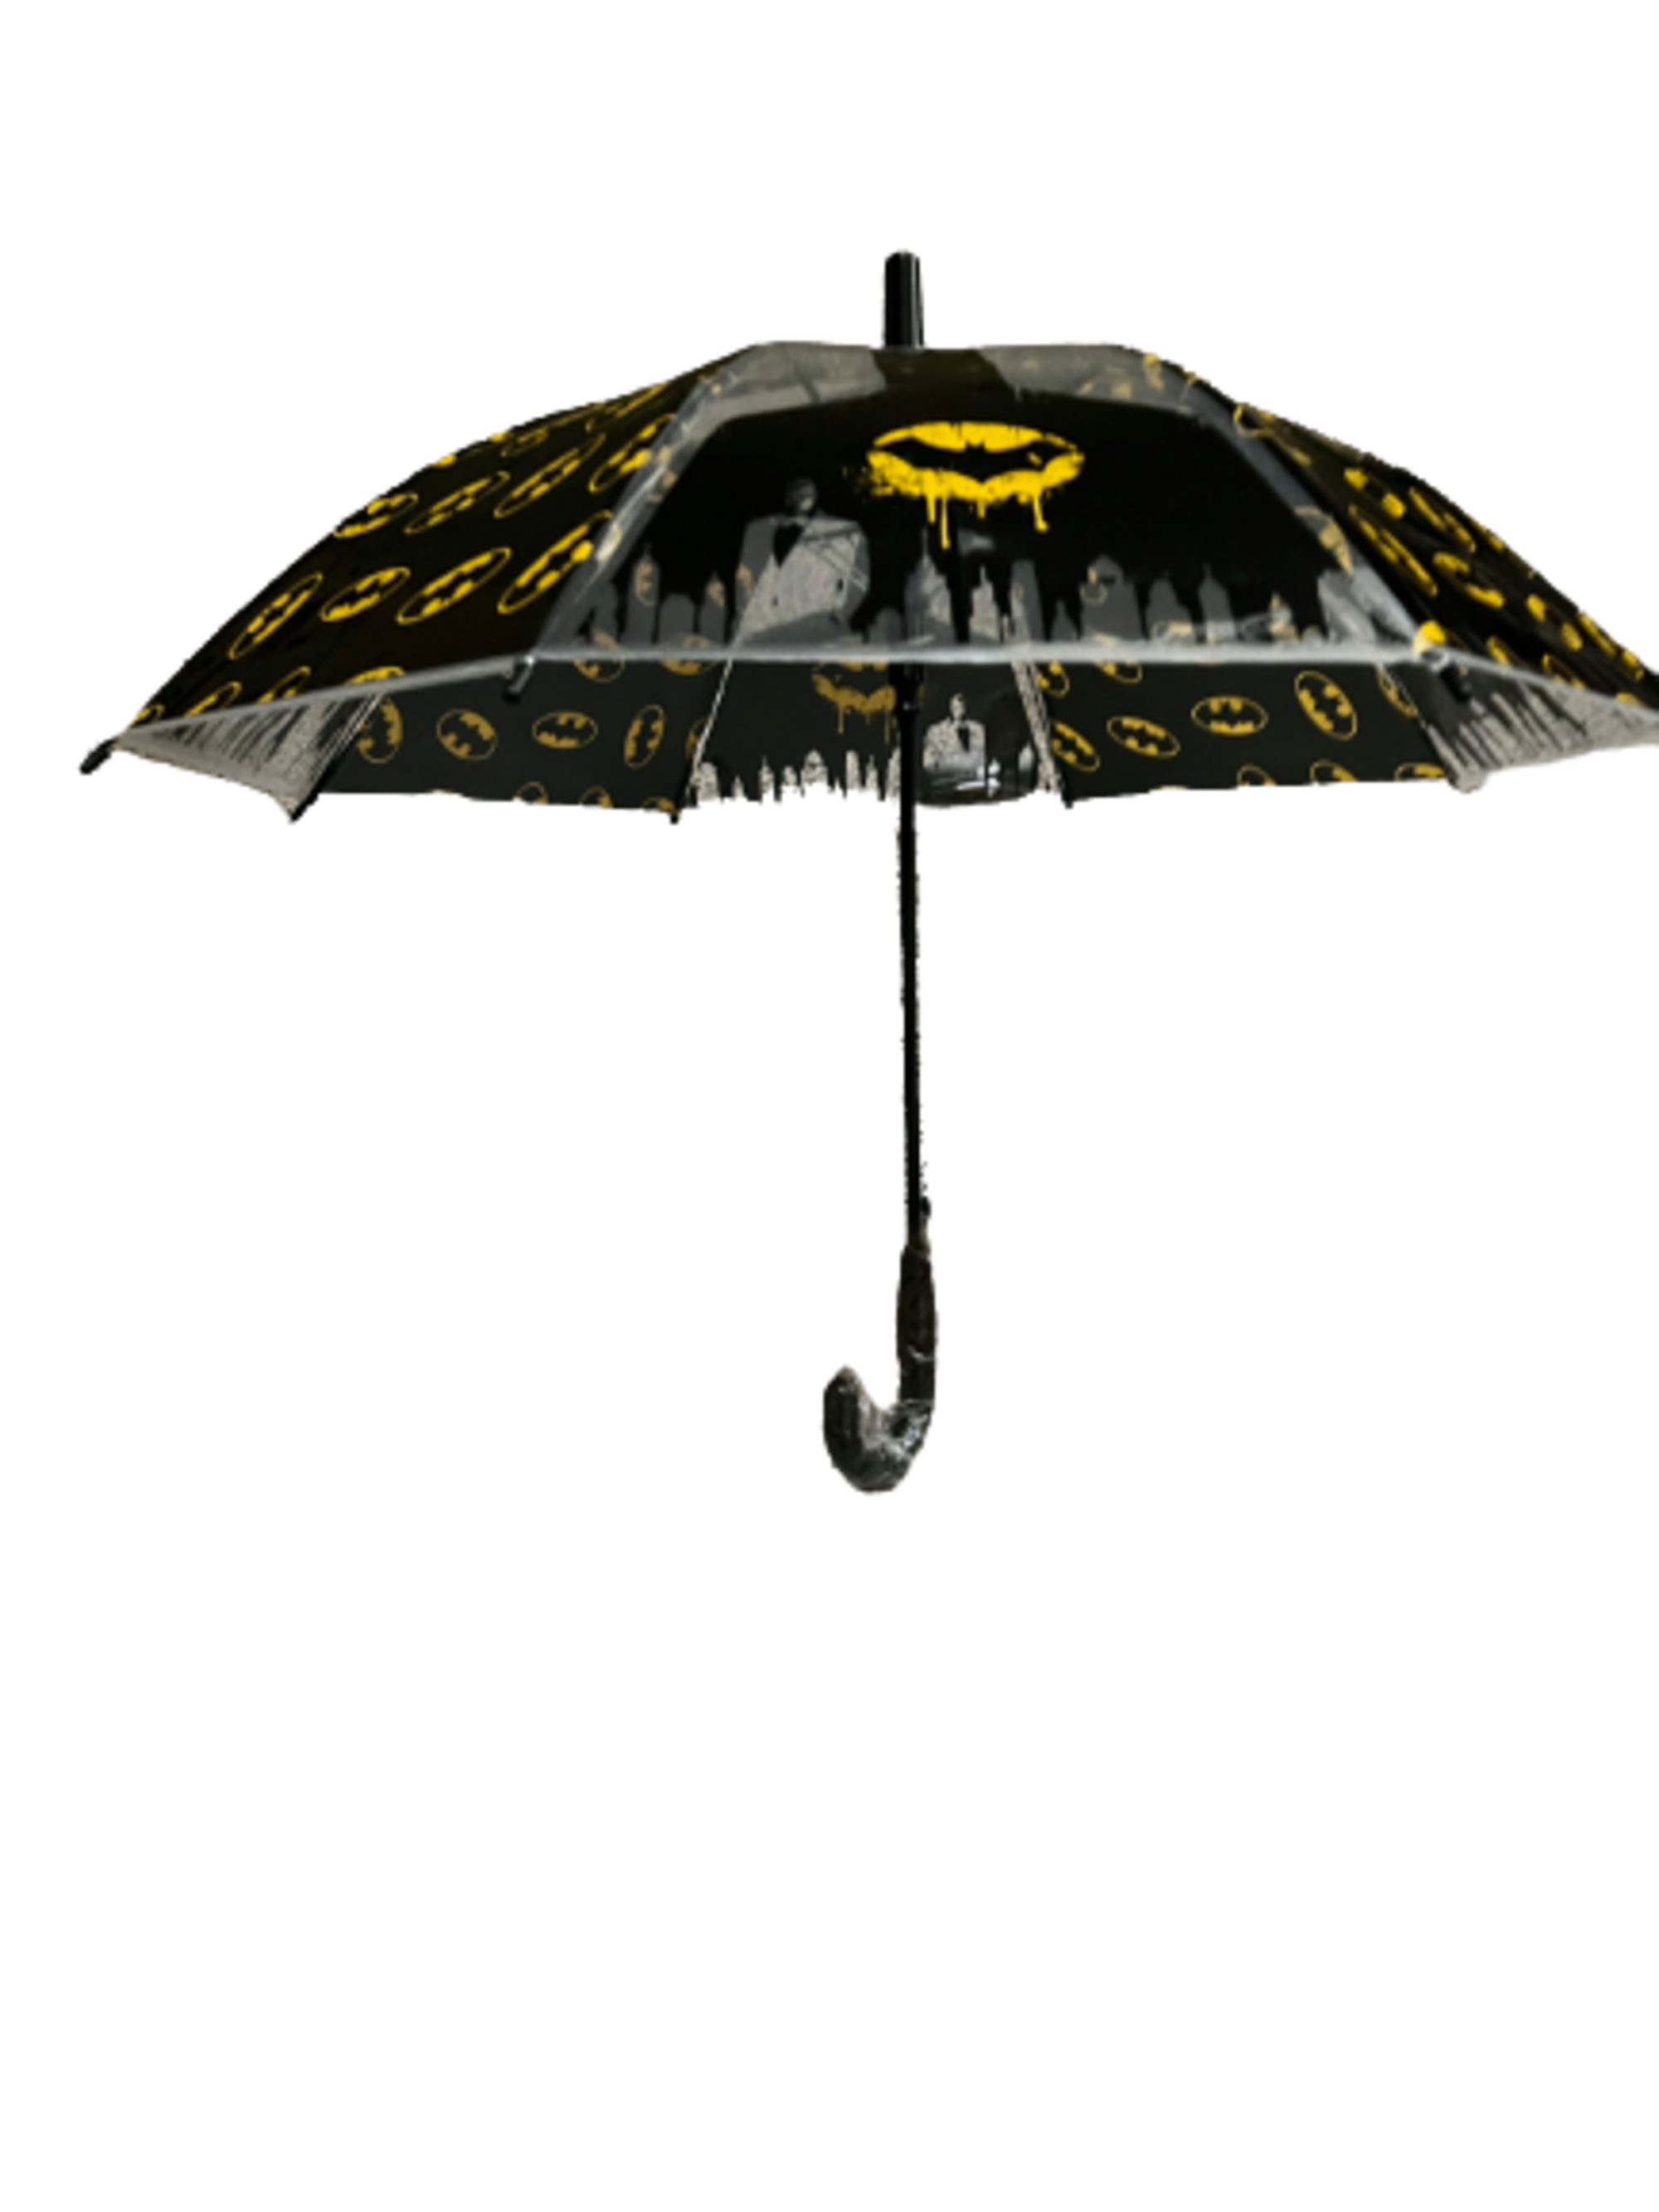 Batman Langregenschirm Batman cm Kinderregenschirm Ø74 (halbautomatisch)